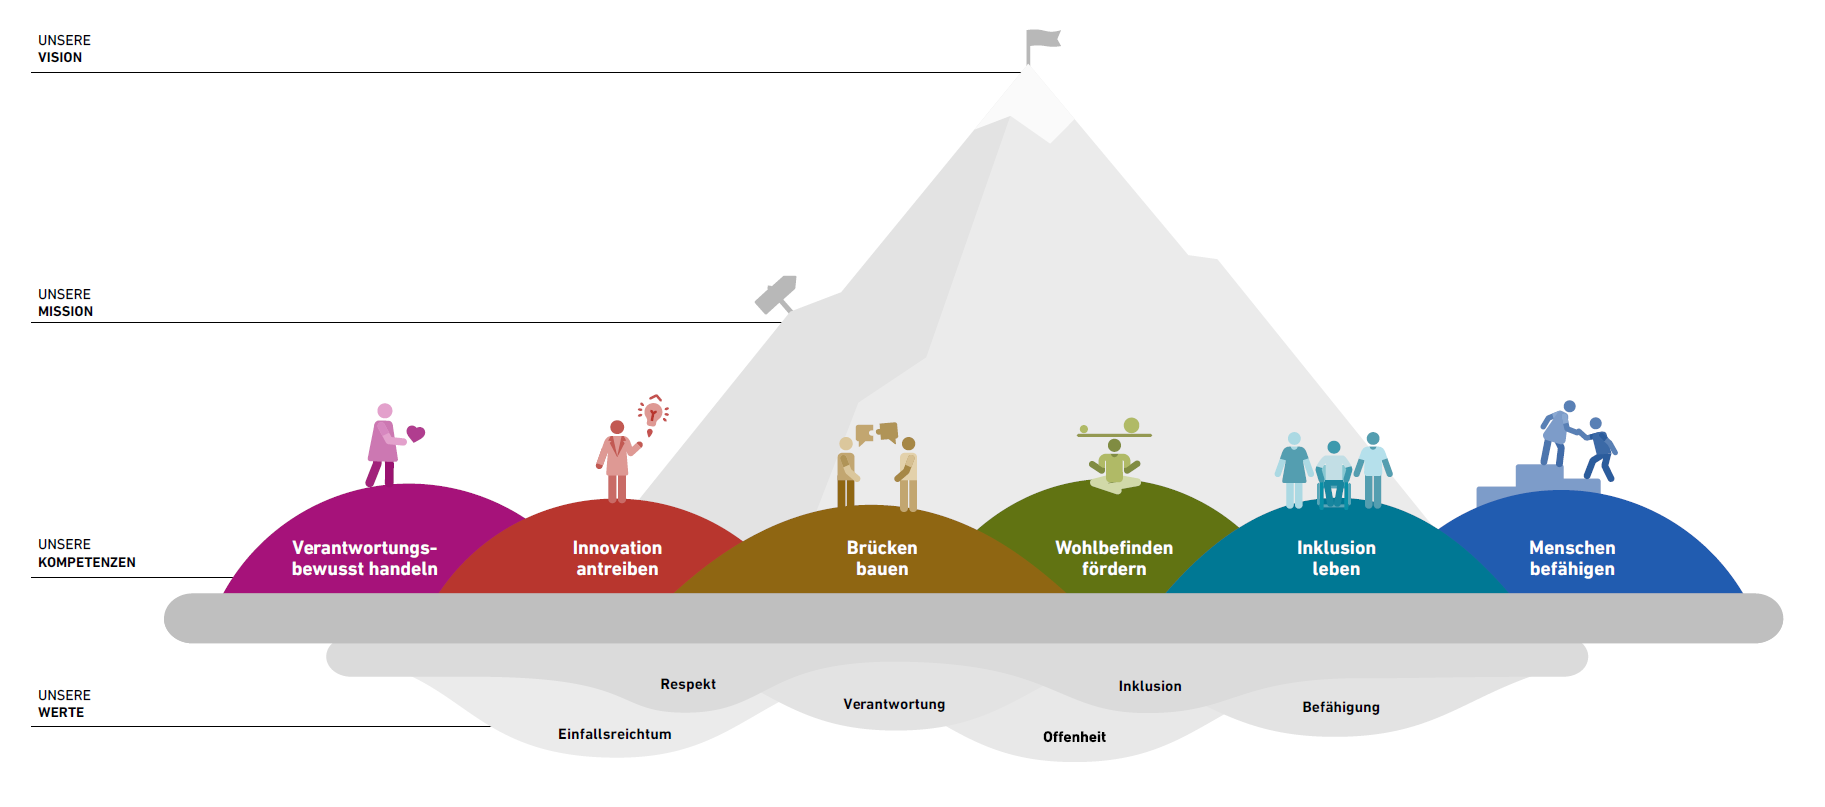 Vergrösserte Ansicht: Infografik welche die sechs Werte zeigt: Einfallsreichtum, Respekt, Verantwortung, Offenheit, Einbeziehung, Befähigung